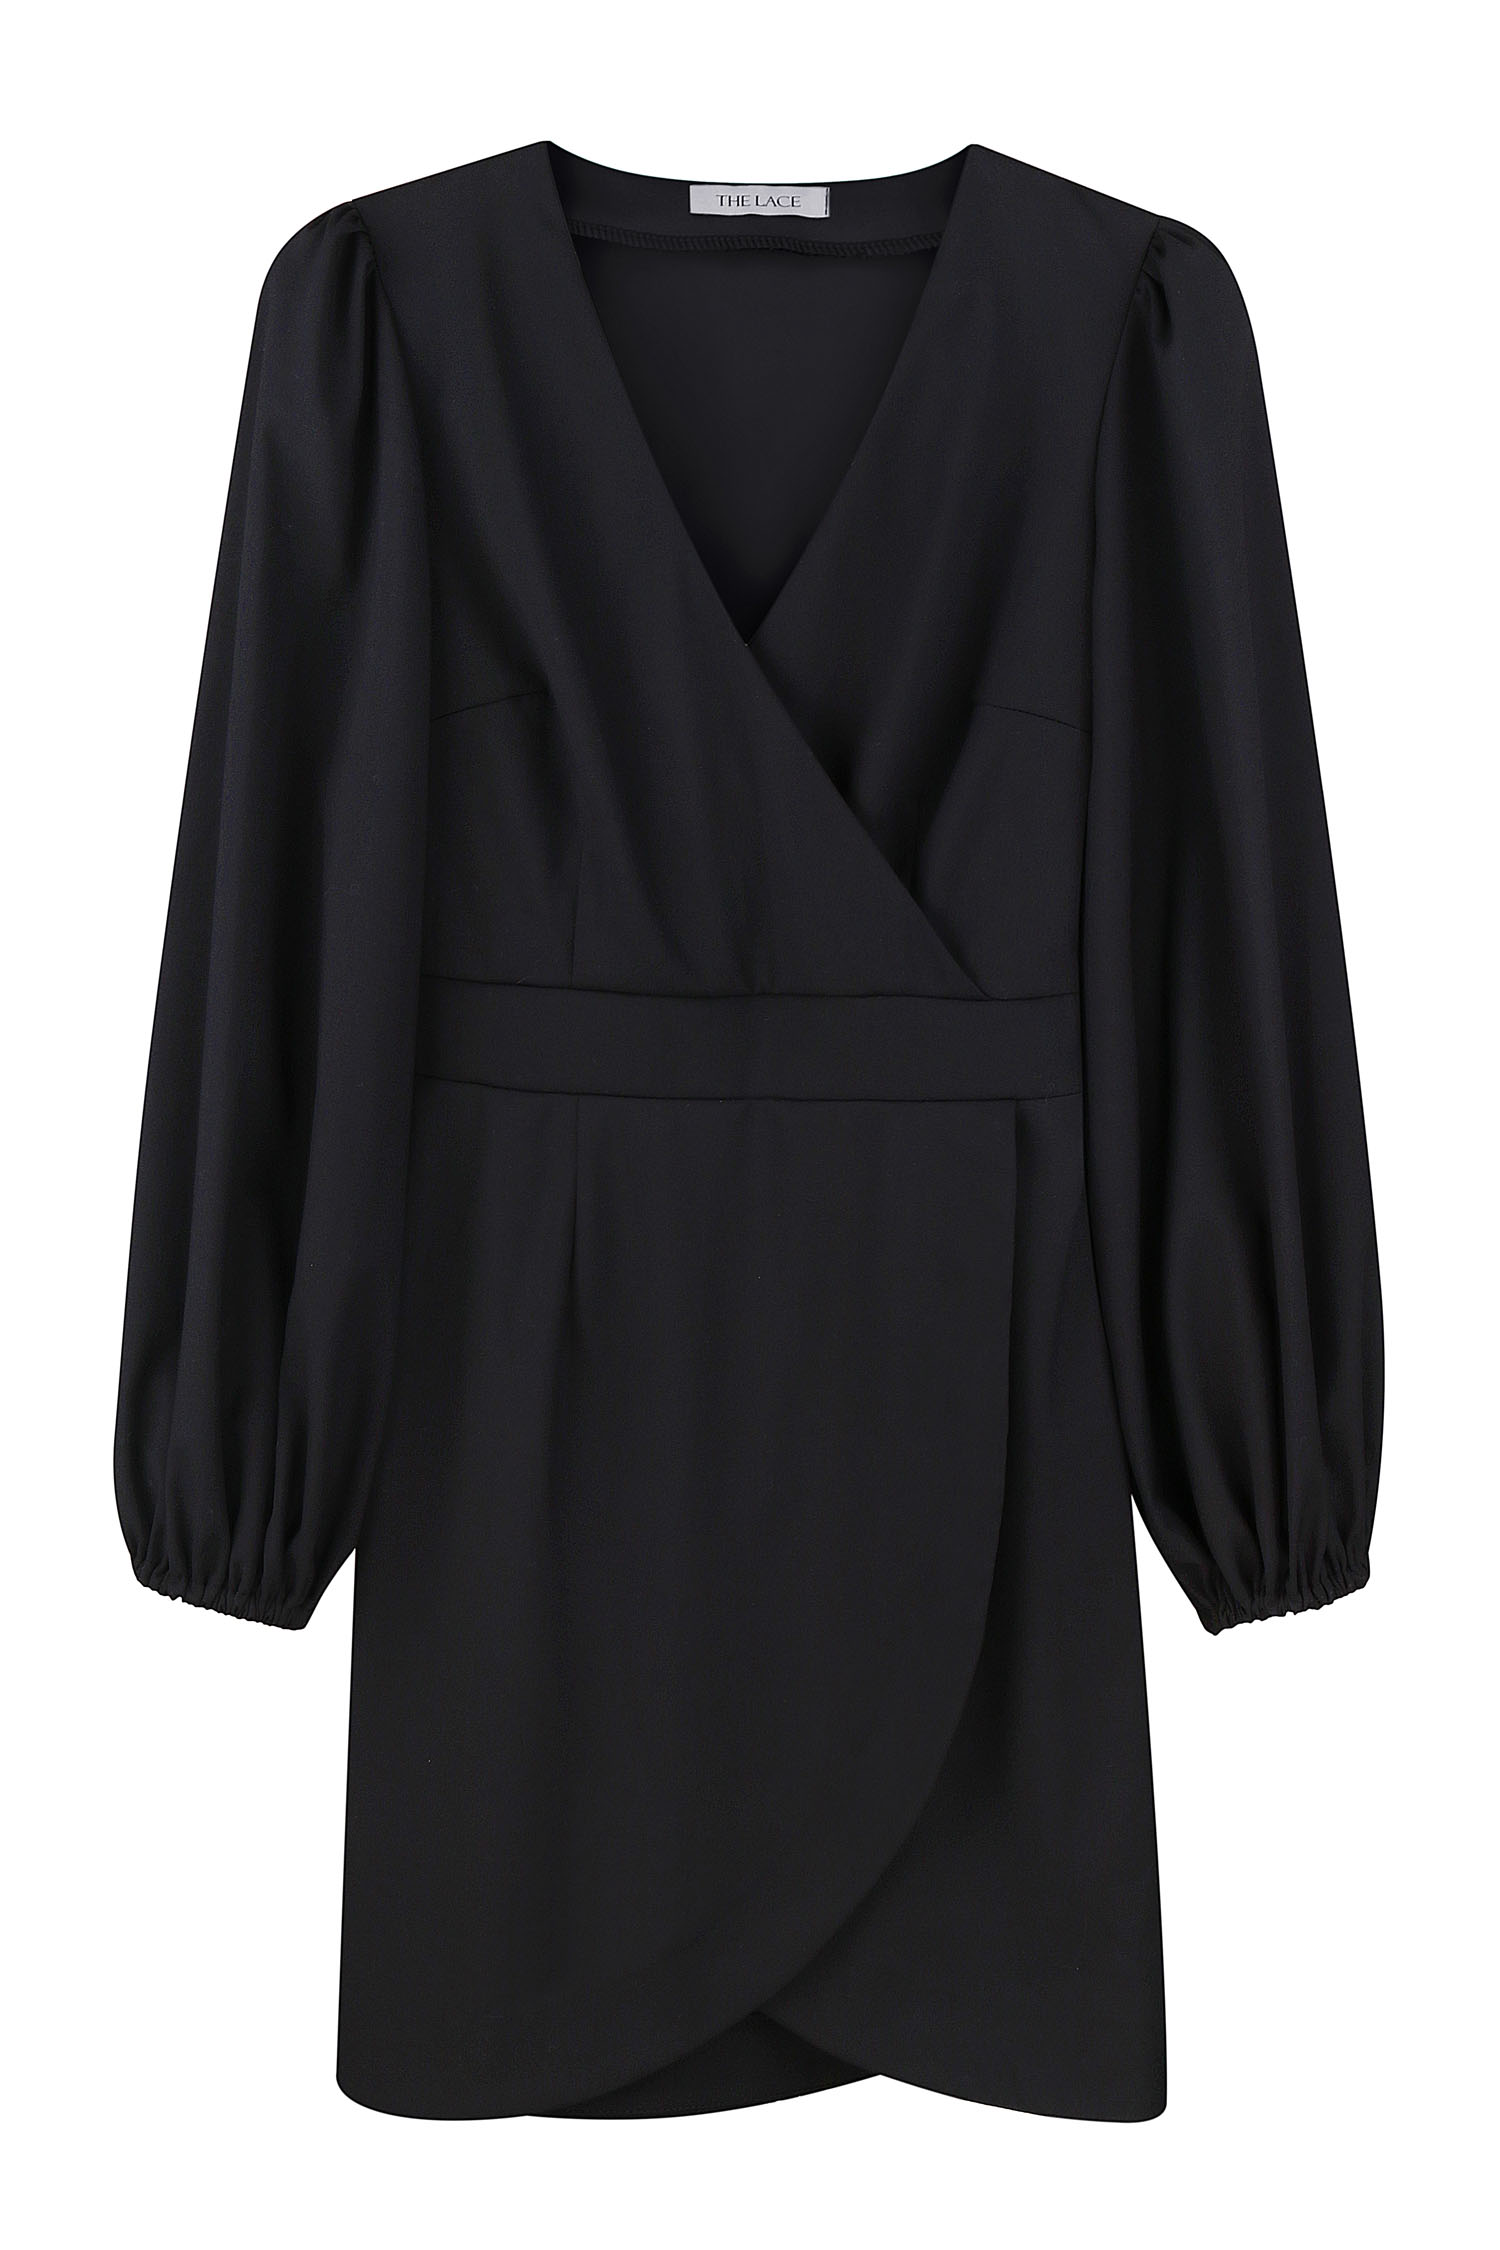 Сукня міні з об'ємним рукавом чорна - THE LACE photo 127913